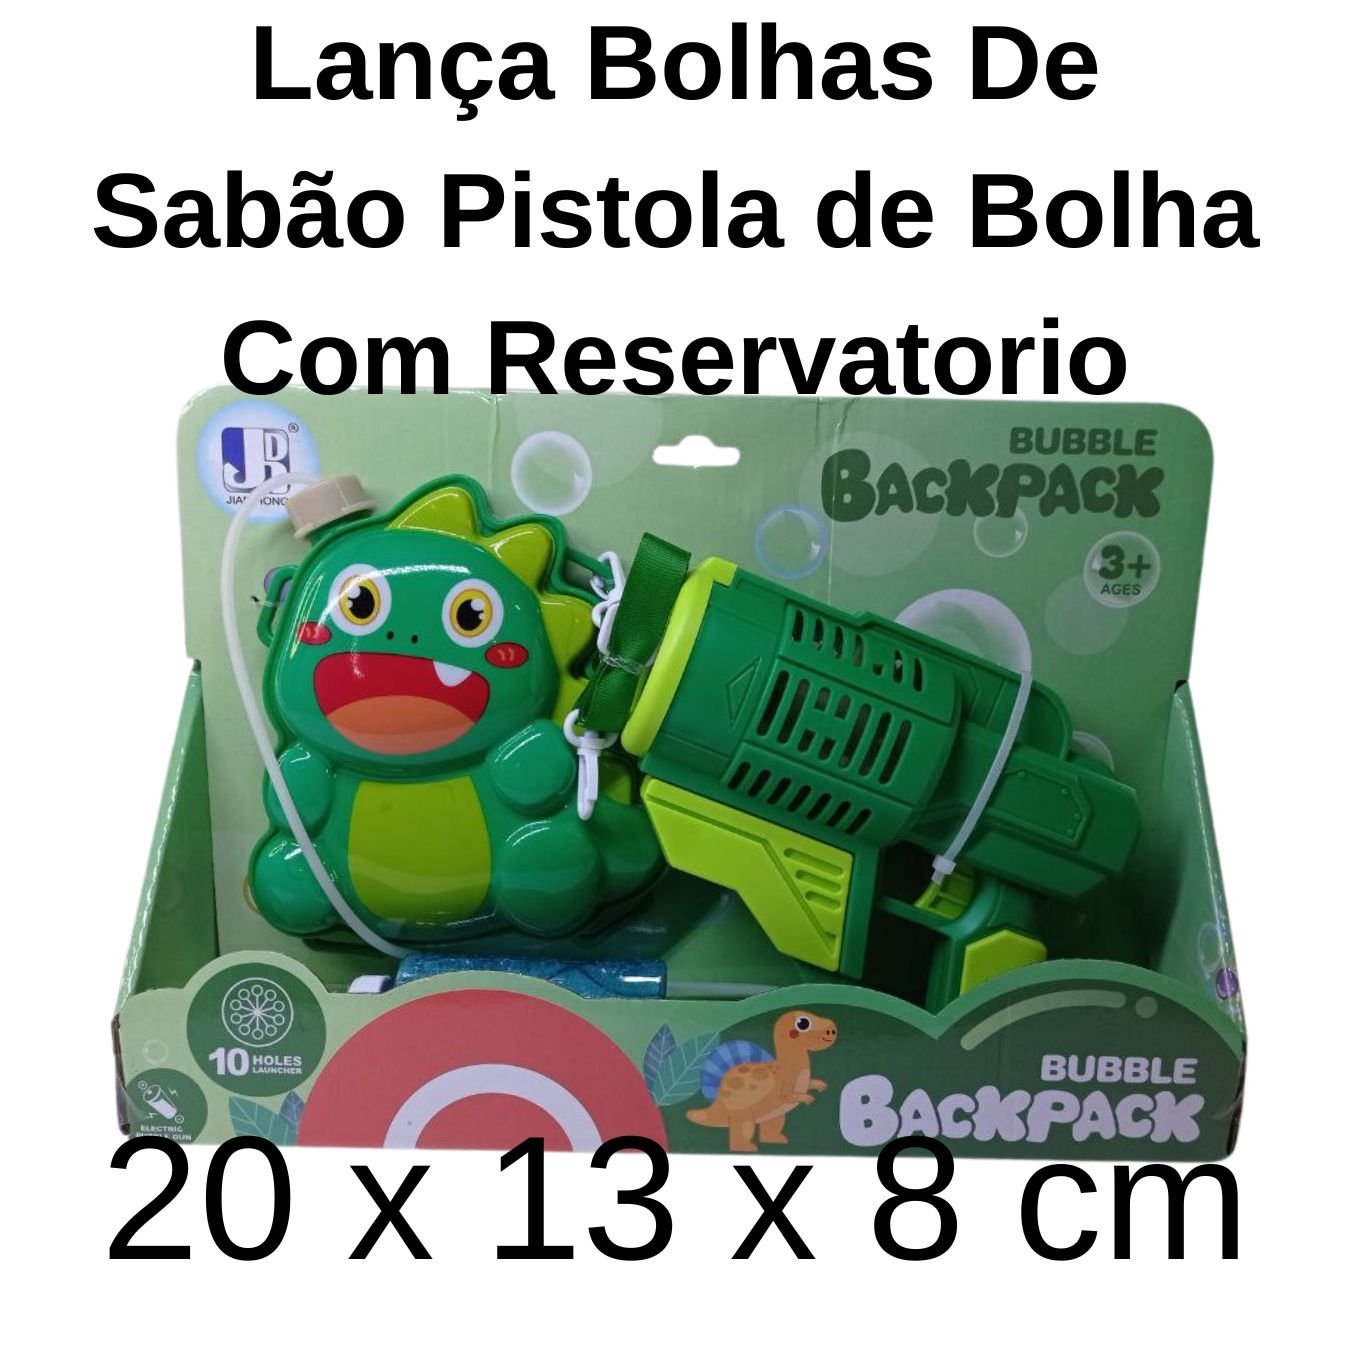 Lança Bolhas De Sabão Pistola Bolha Reservatorio Cor:verde - 2